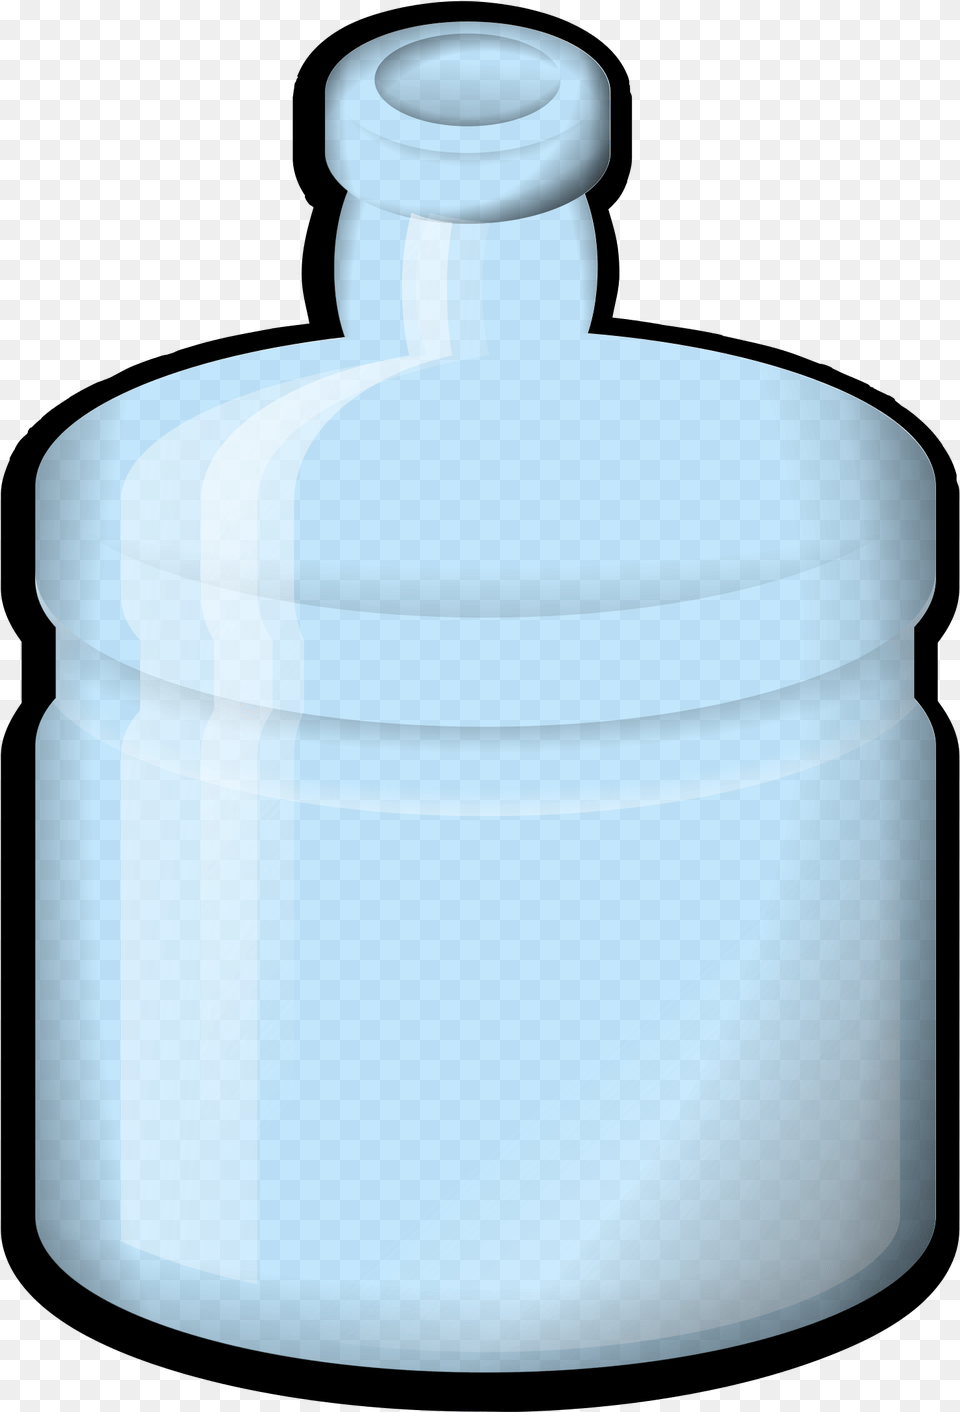 Water Bottle Clip Art, Jar, Shaker Png Image